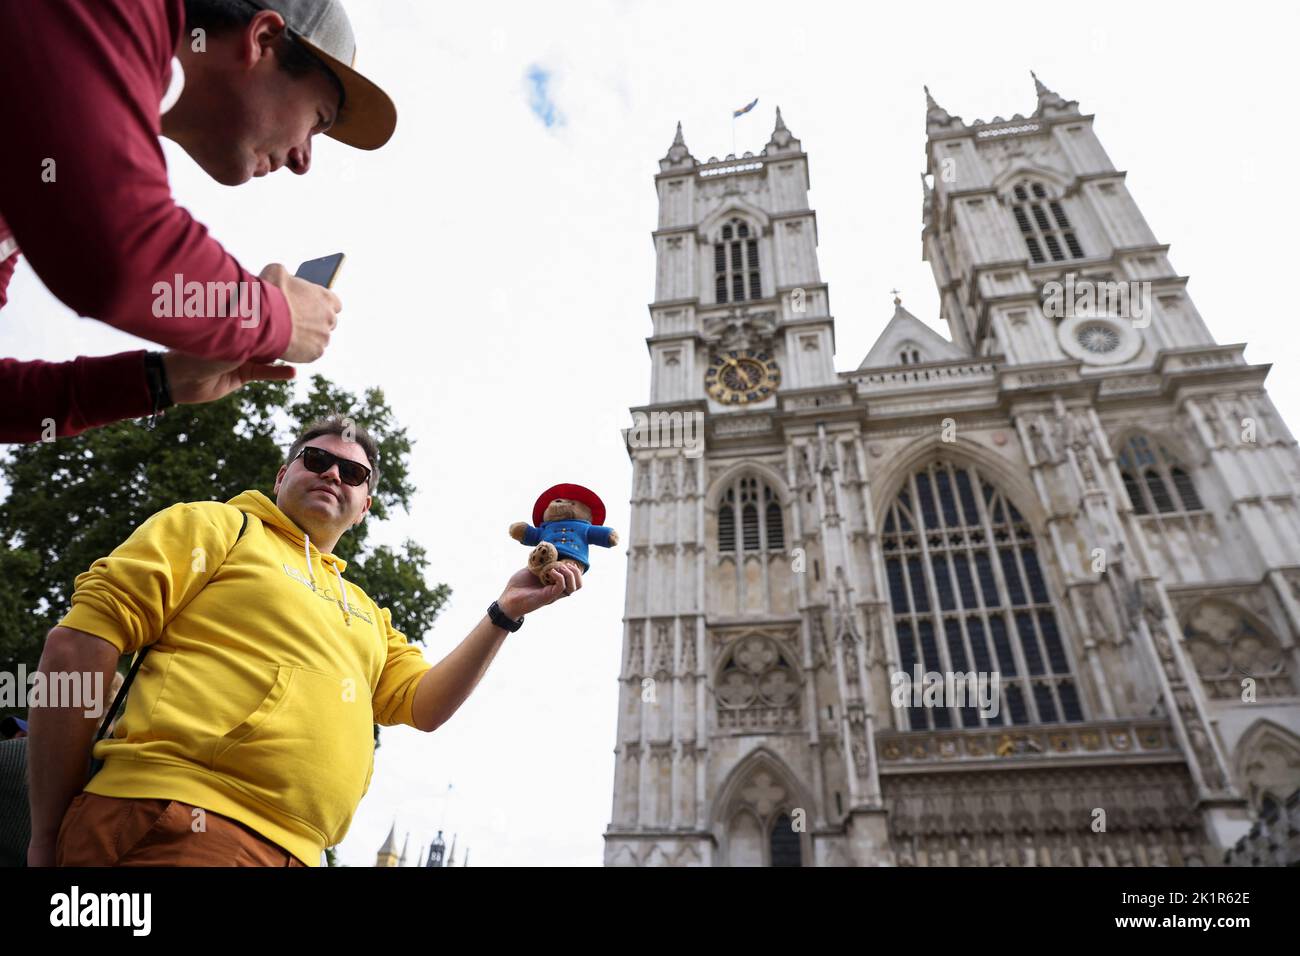 Un uomo si pone per una foto con un giocattolo Paddington Bear fuori Westminster Abbey, a seguito dei funerali della regina Elisabetta britannica, a Londra, Gran Bretagna 20 settembre 2022. REUTERS/Tom Nicholson Foto Stock